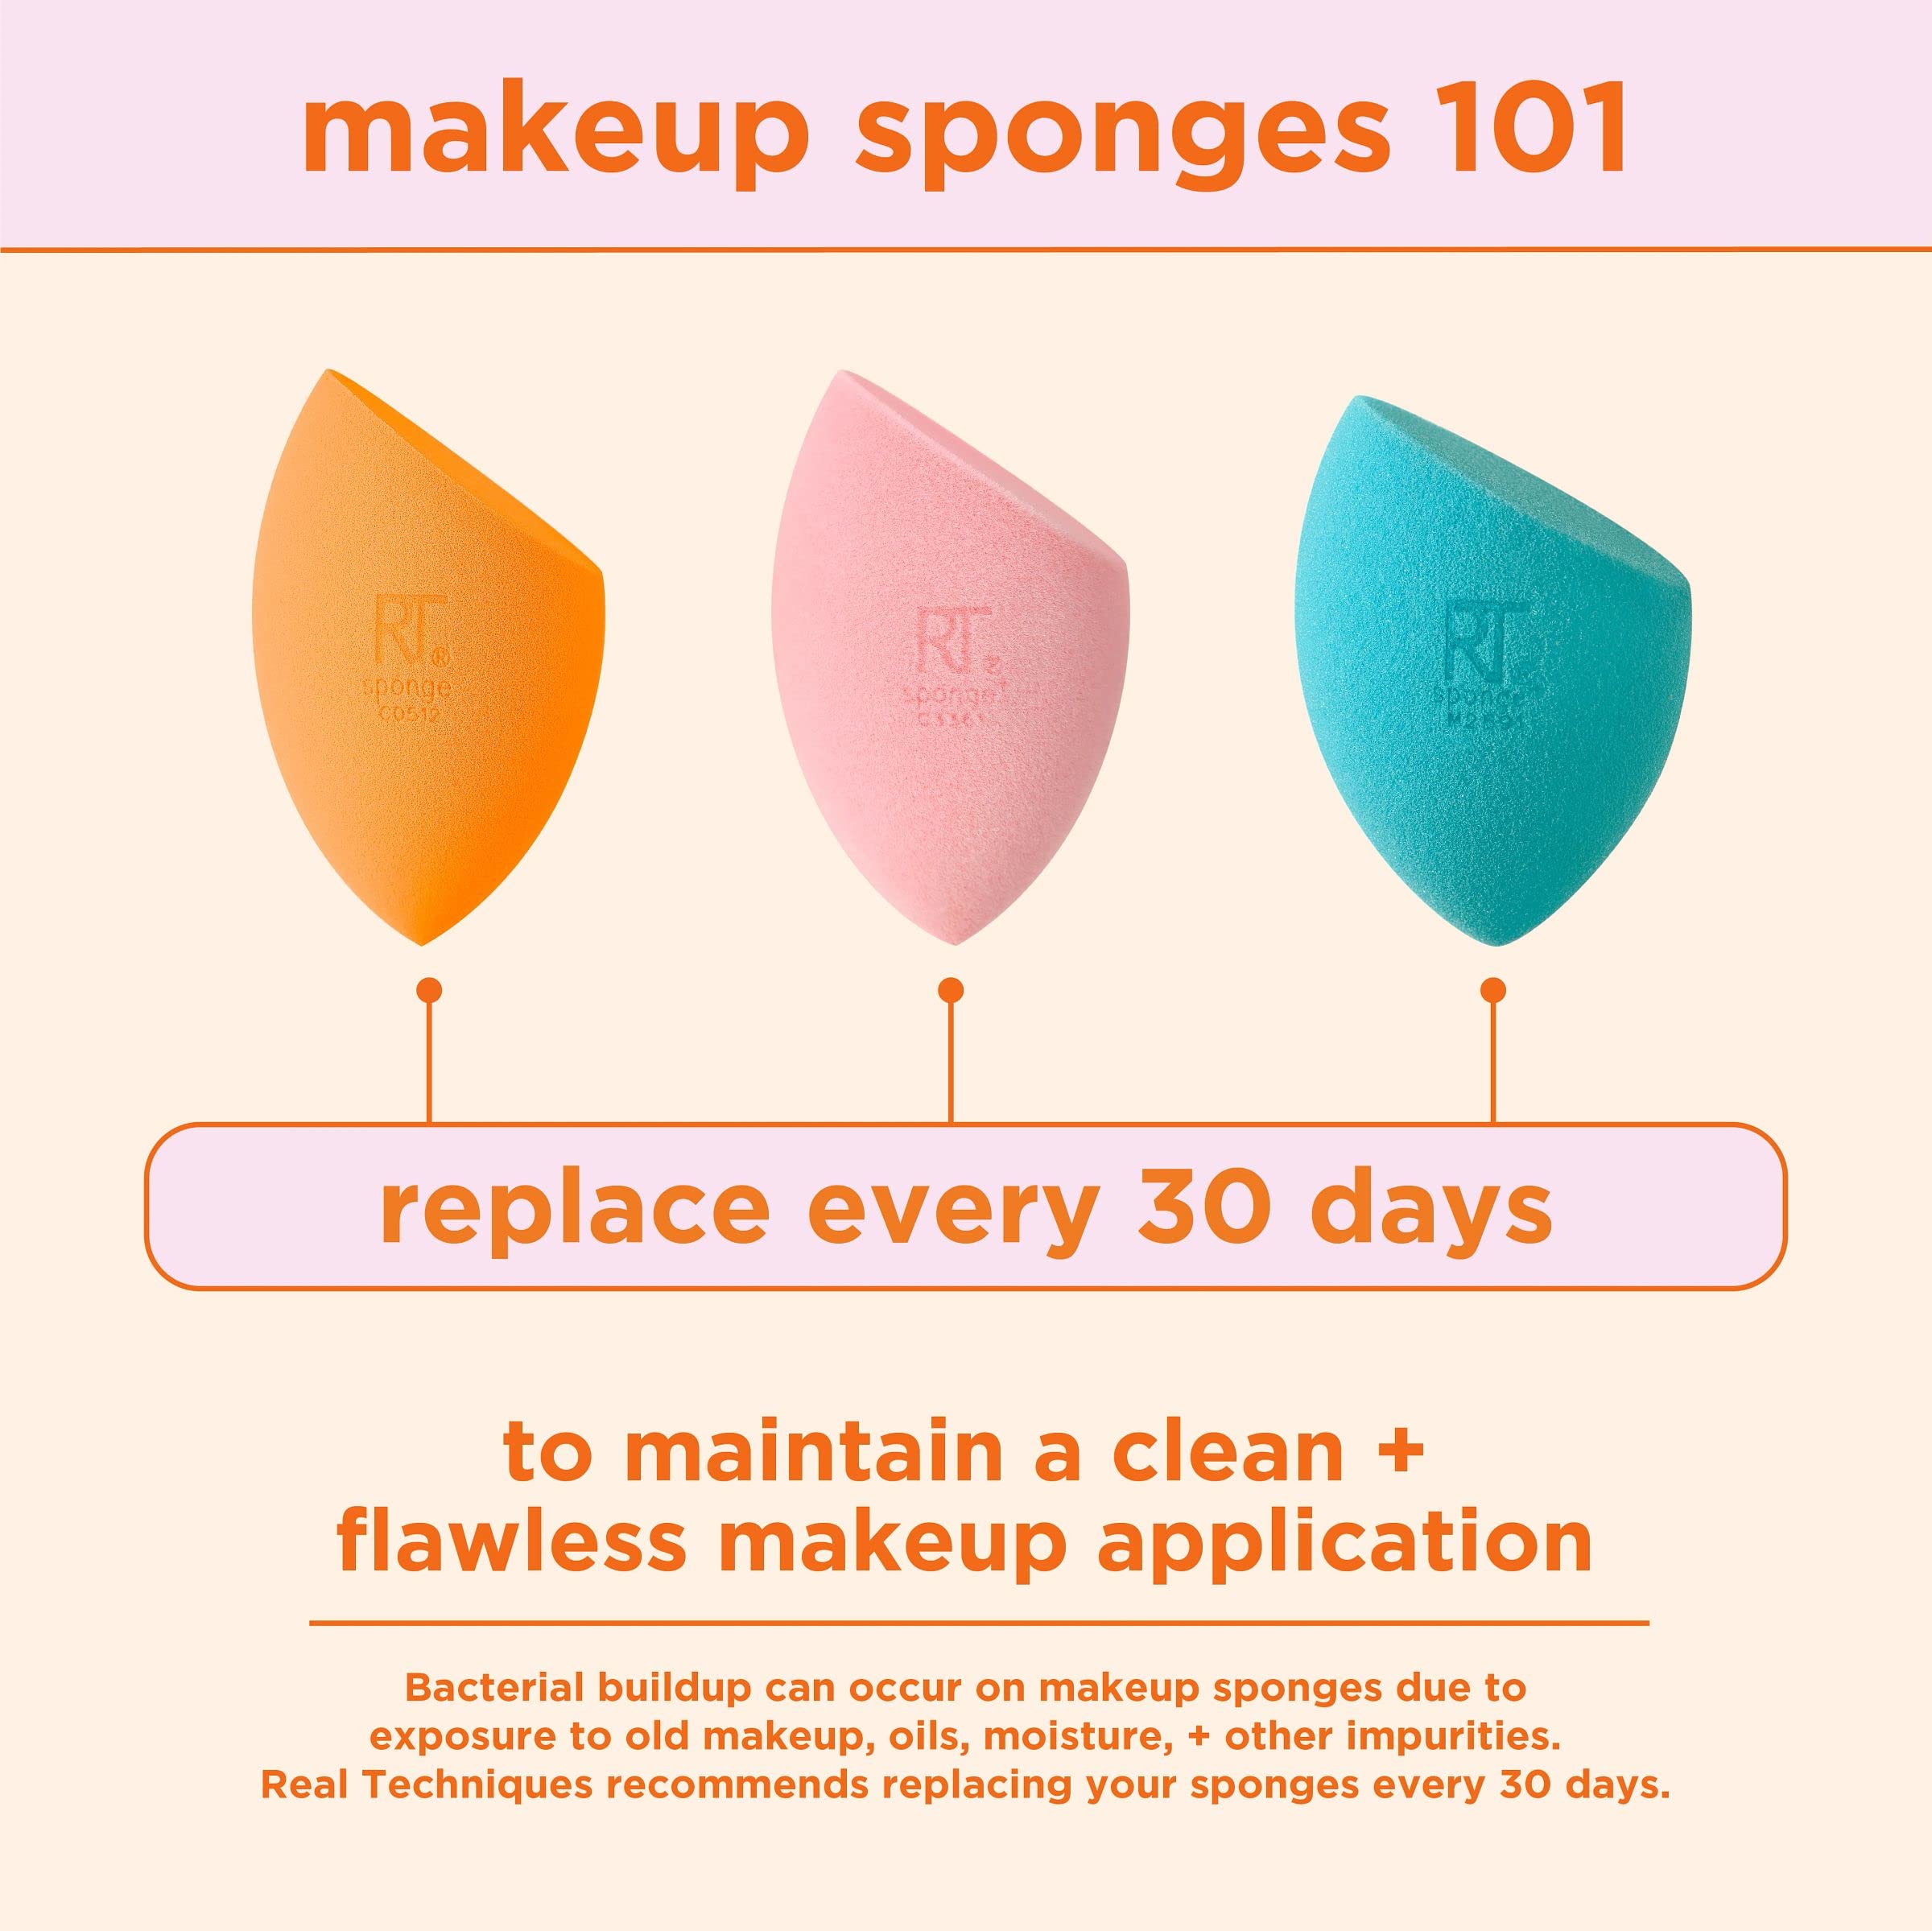 Real Techniques Ultimate Makeup Sponge Trio, Makeup Blending Sponges, For Liquid, Cream, & Powder Products, Powder & Foundation Sponges, Mini Makeup Sponge, Latex-Free Foam, Travel-Friendly, 3 Count